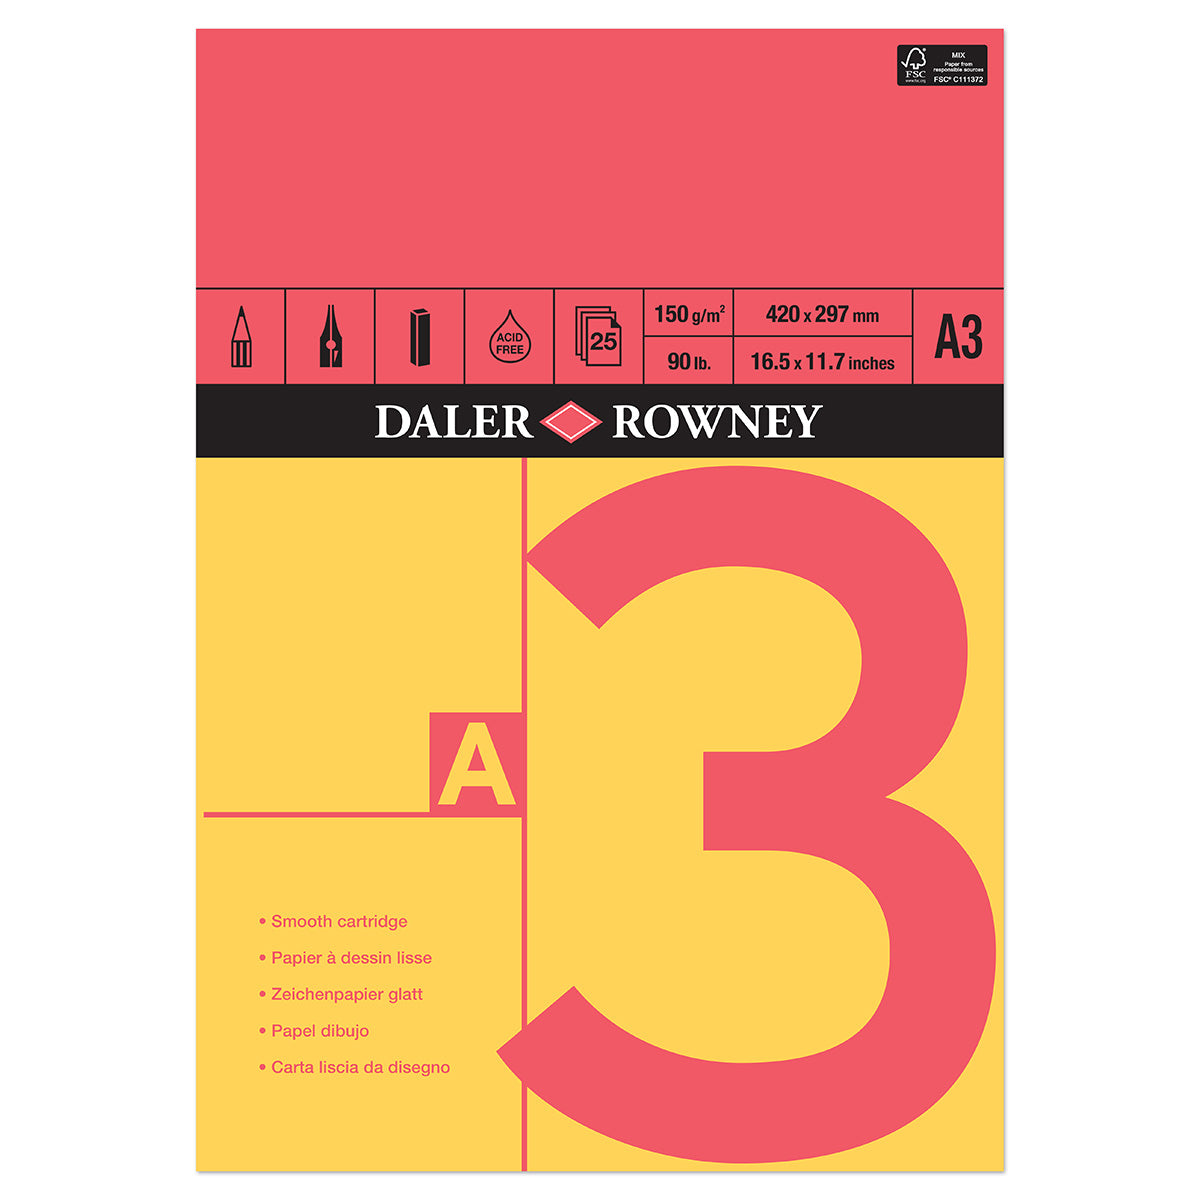 Daler Rowney - Cartouche Gommée Rouge et Jaune - A3 - 150 g/m²